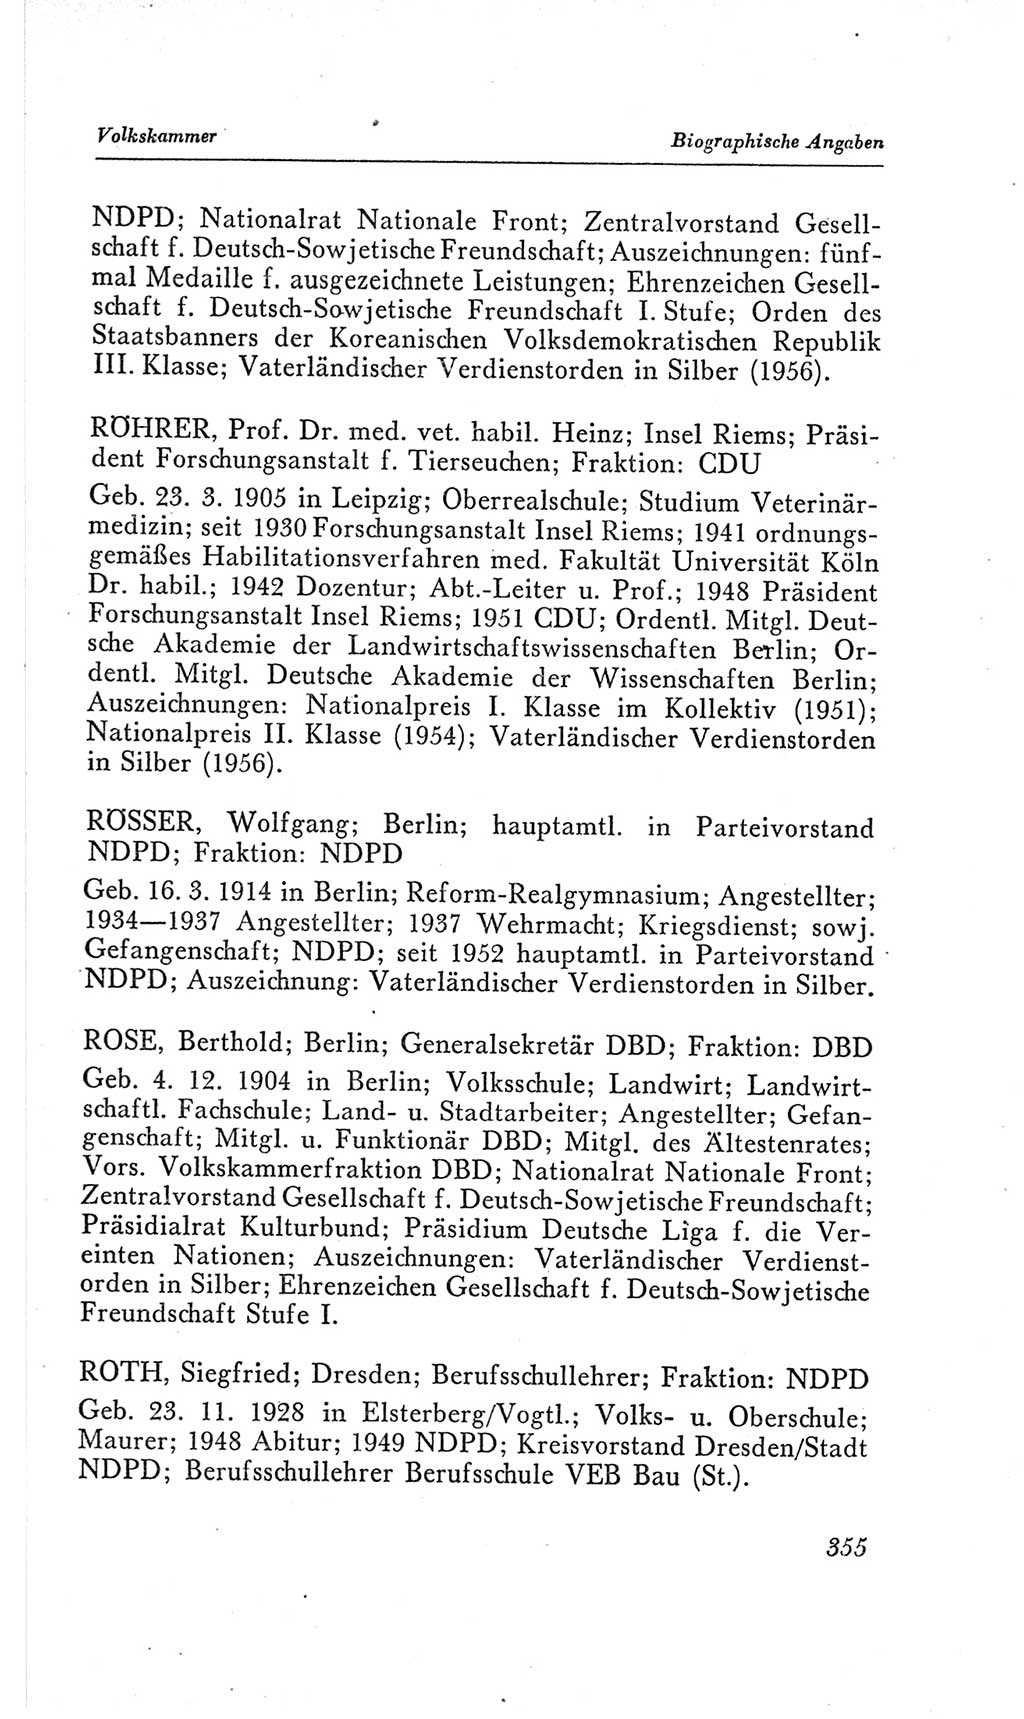 Handbuch der Volkskammer (VK) der Deutschen Demokratischen Republik (DDR), 2. Wahlperiode 1954-1958, Seite 355 (Hdb. VK. DDR, 2. WP. 1954-1958, S. 355)